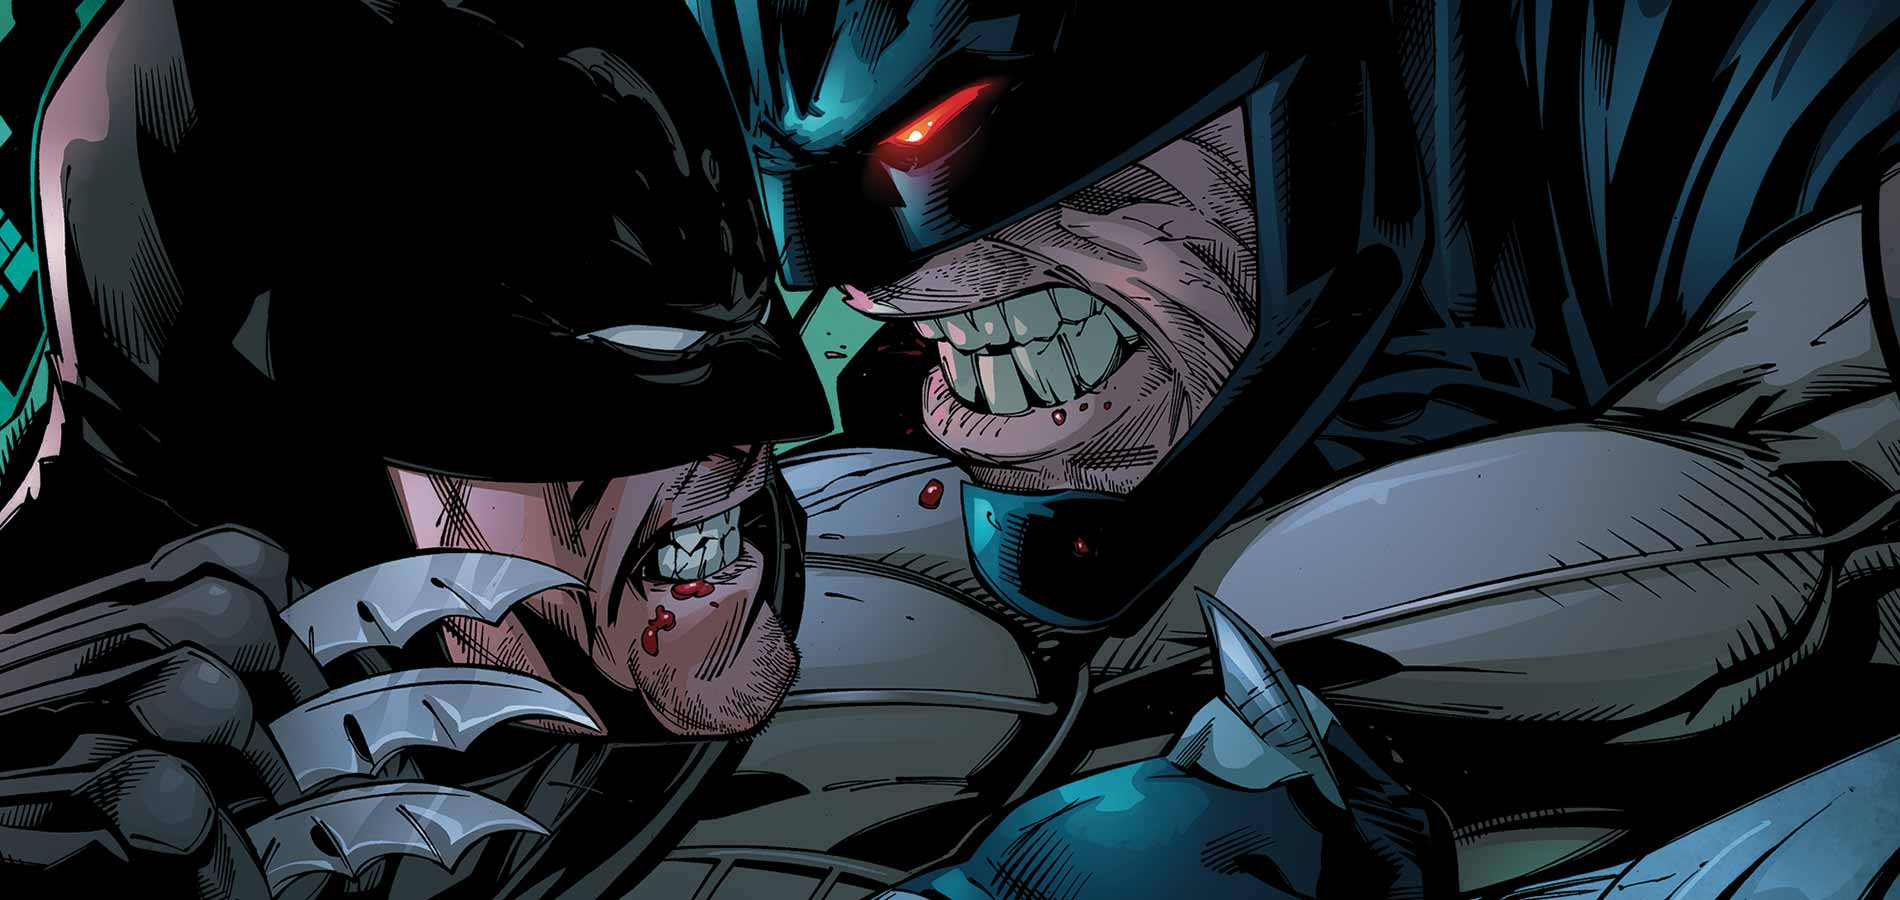 Forever Evil Aftermath: Batman Vs. Bane Backgrounds on Wallpapers Vista